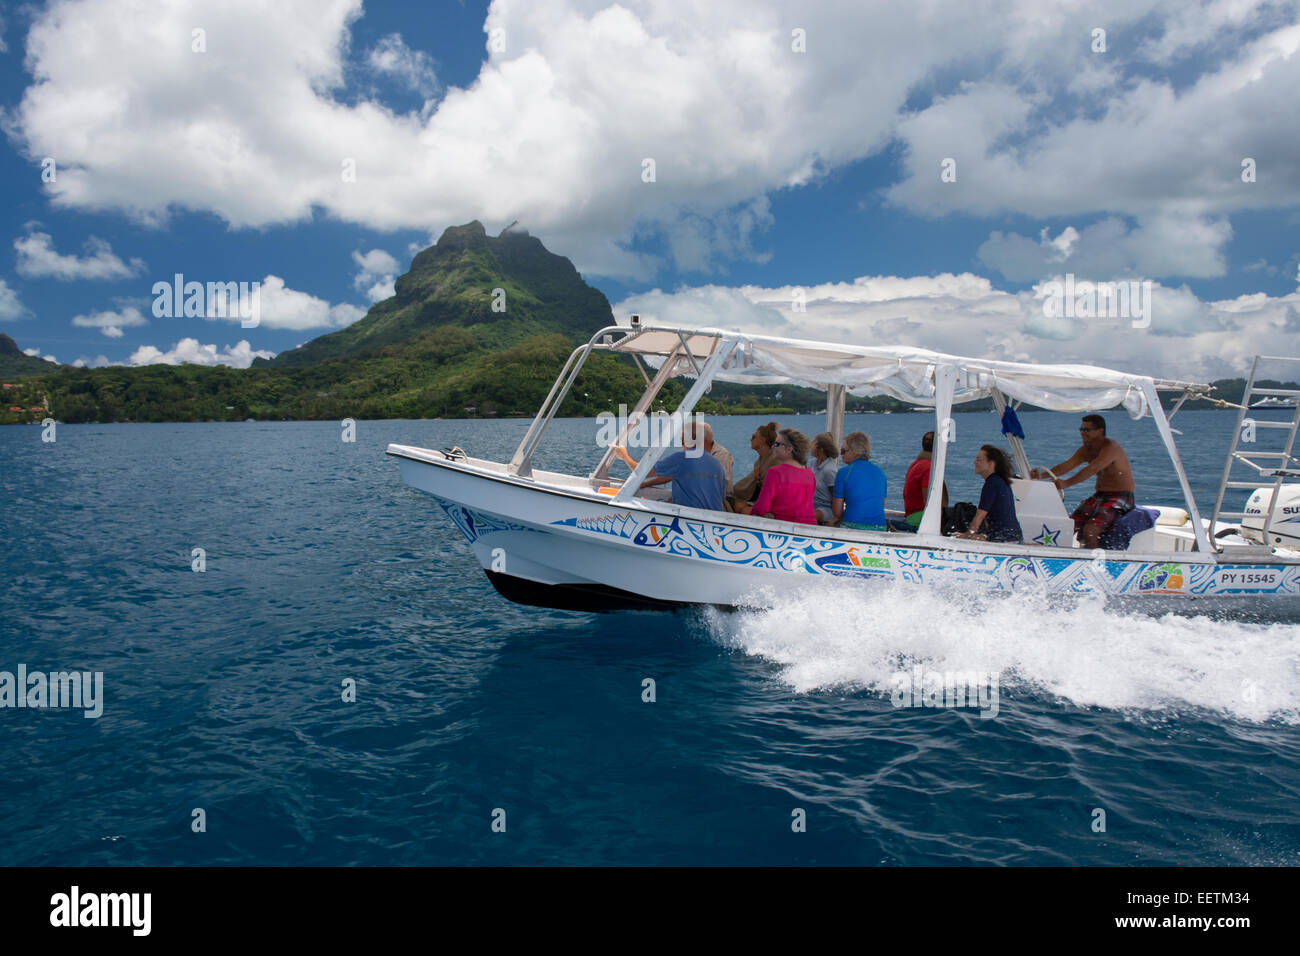 Französisch Polynesien, Bora Bora, Gesellschaftsinseln, Leeward-Inseln. Touristischen Sightseeing-Boot mit den klassischen Blick auf Bora Bora Vulkan Stockfoto